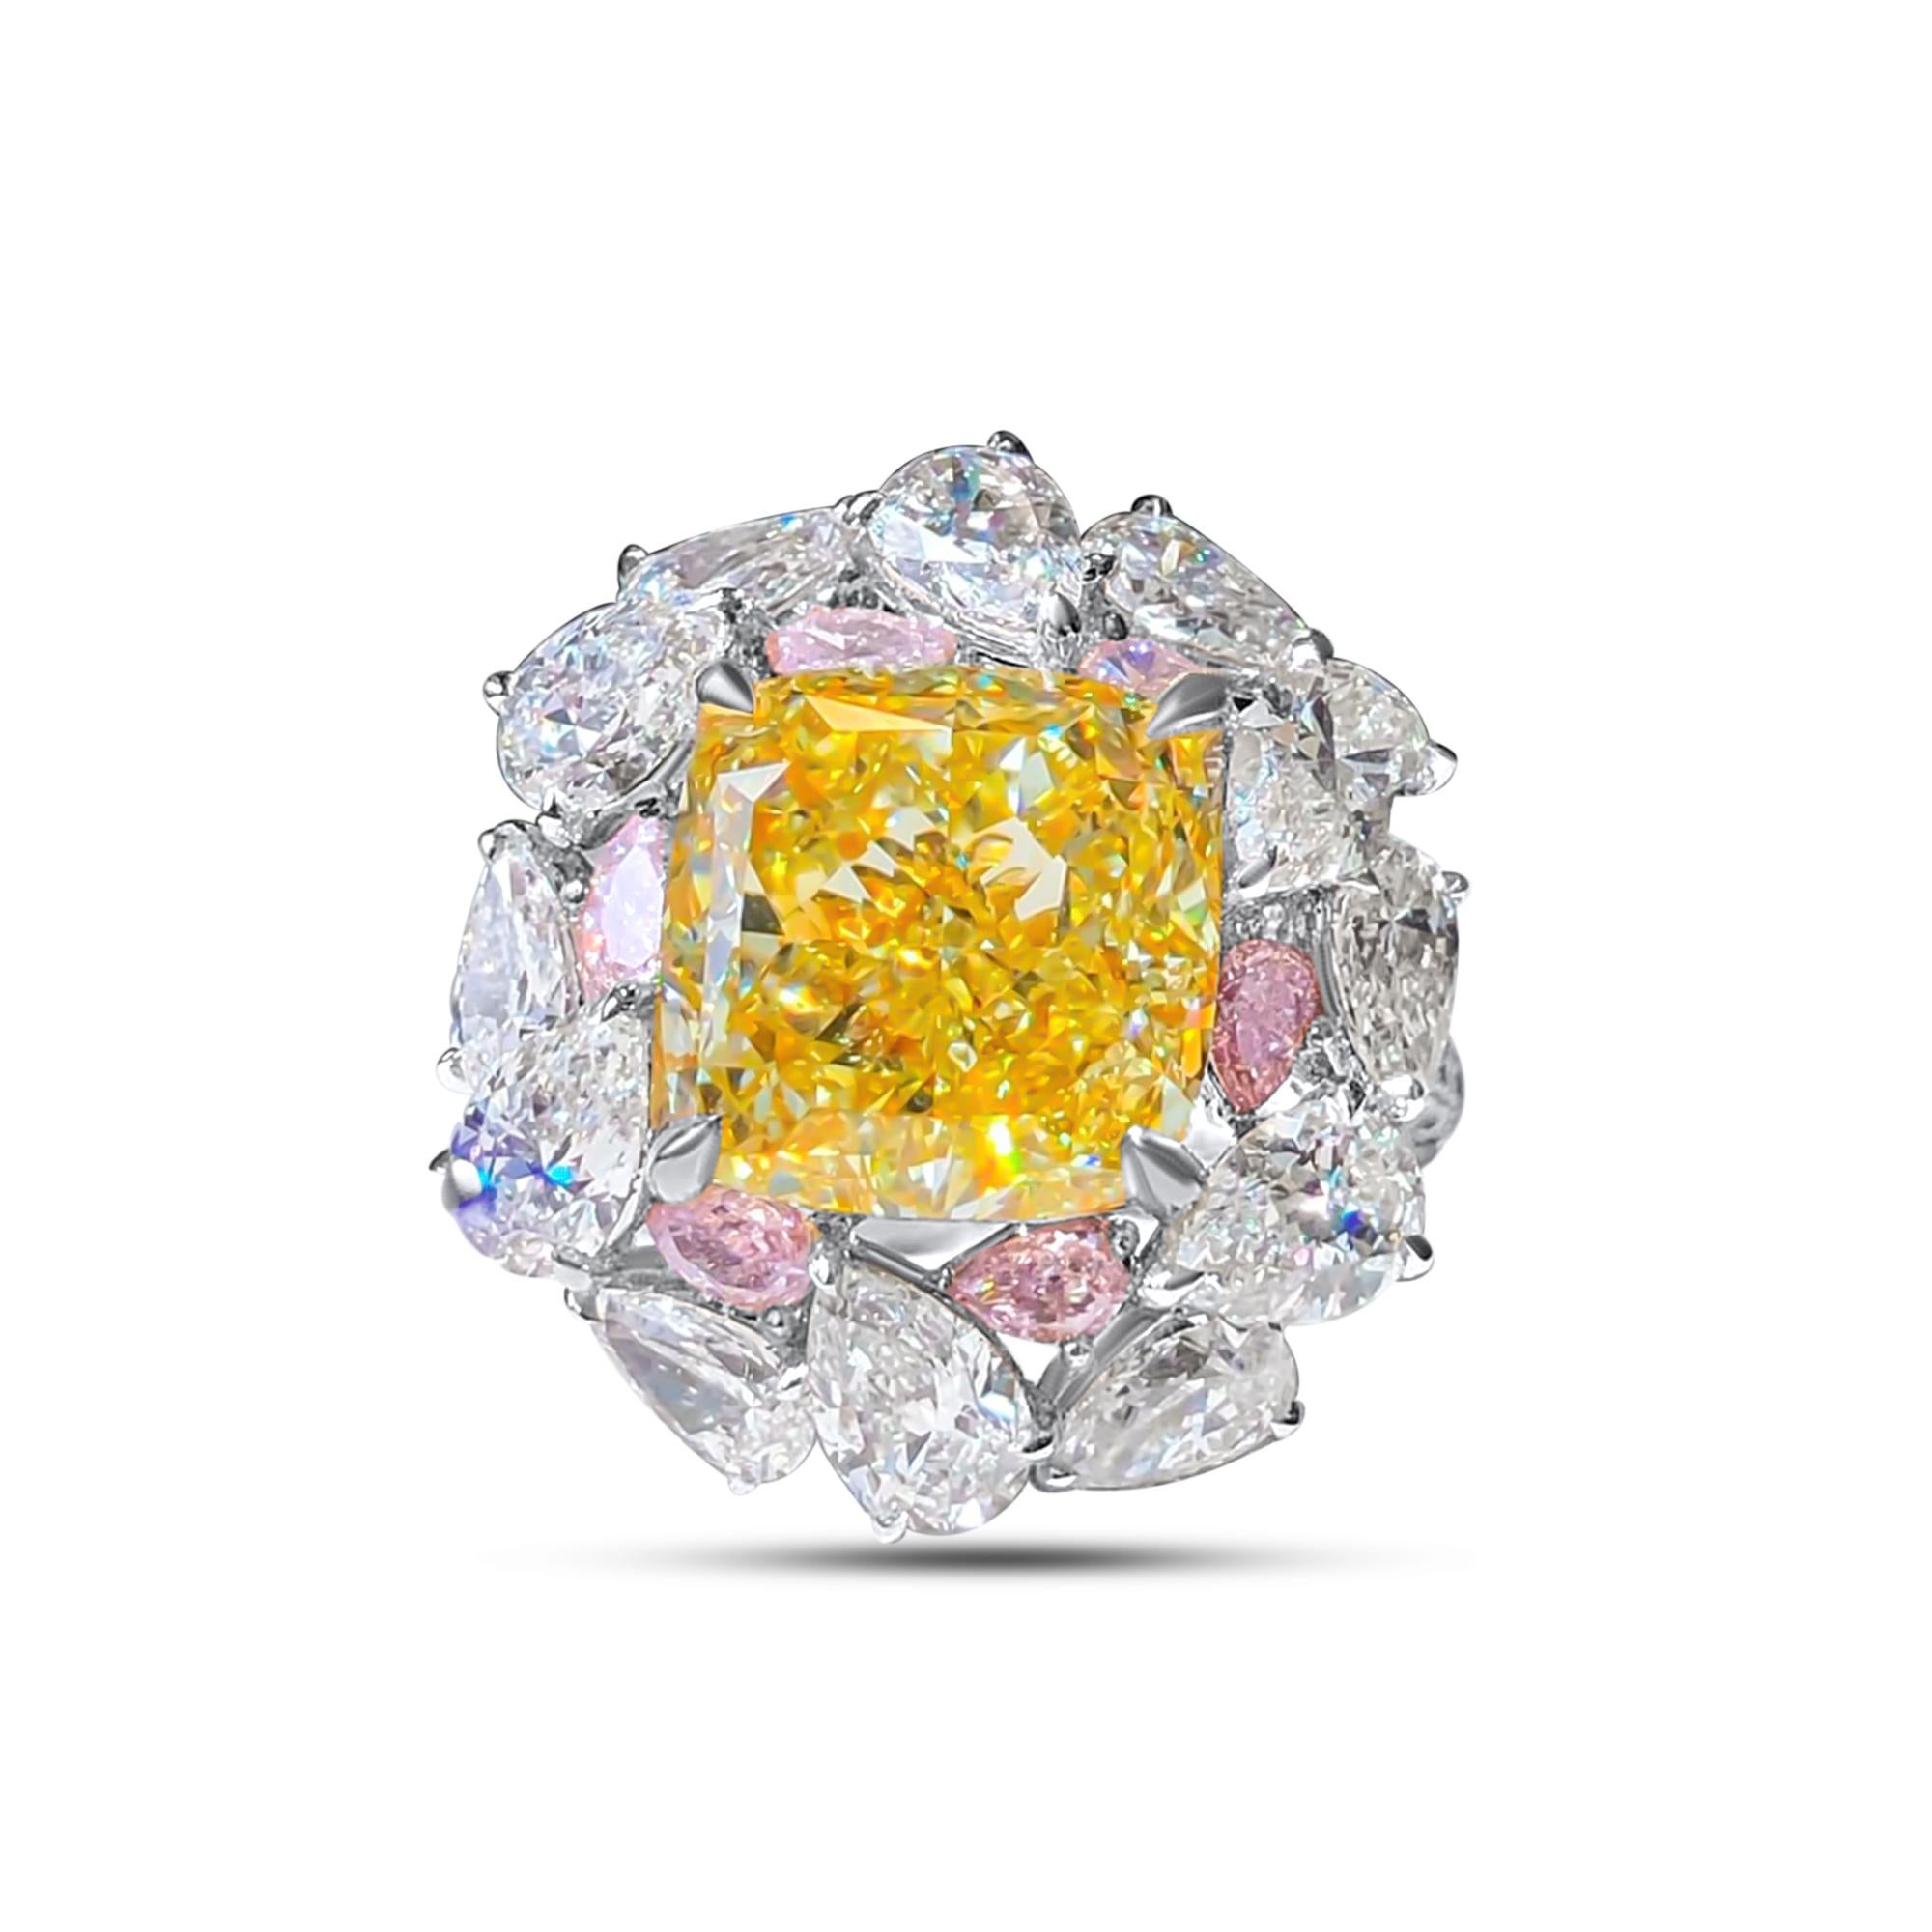 Wir laden Sie ein, diesen majestätischen Ring zu entdecken, der mit einem 7,01-karätigen GIA-zertifizierten Fancy Intense Yellow-Diamanten im Kissenschliff besetzt ist, der mit hellrosa und farblosen Diamanten im Birnenschliff von insgesamt 3 Karat